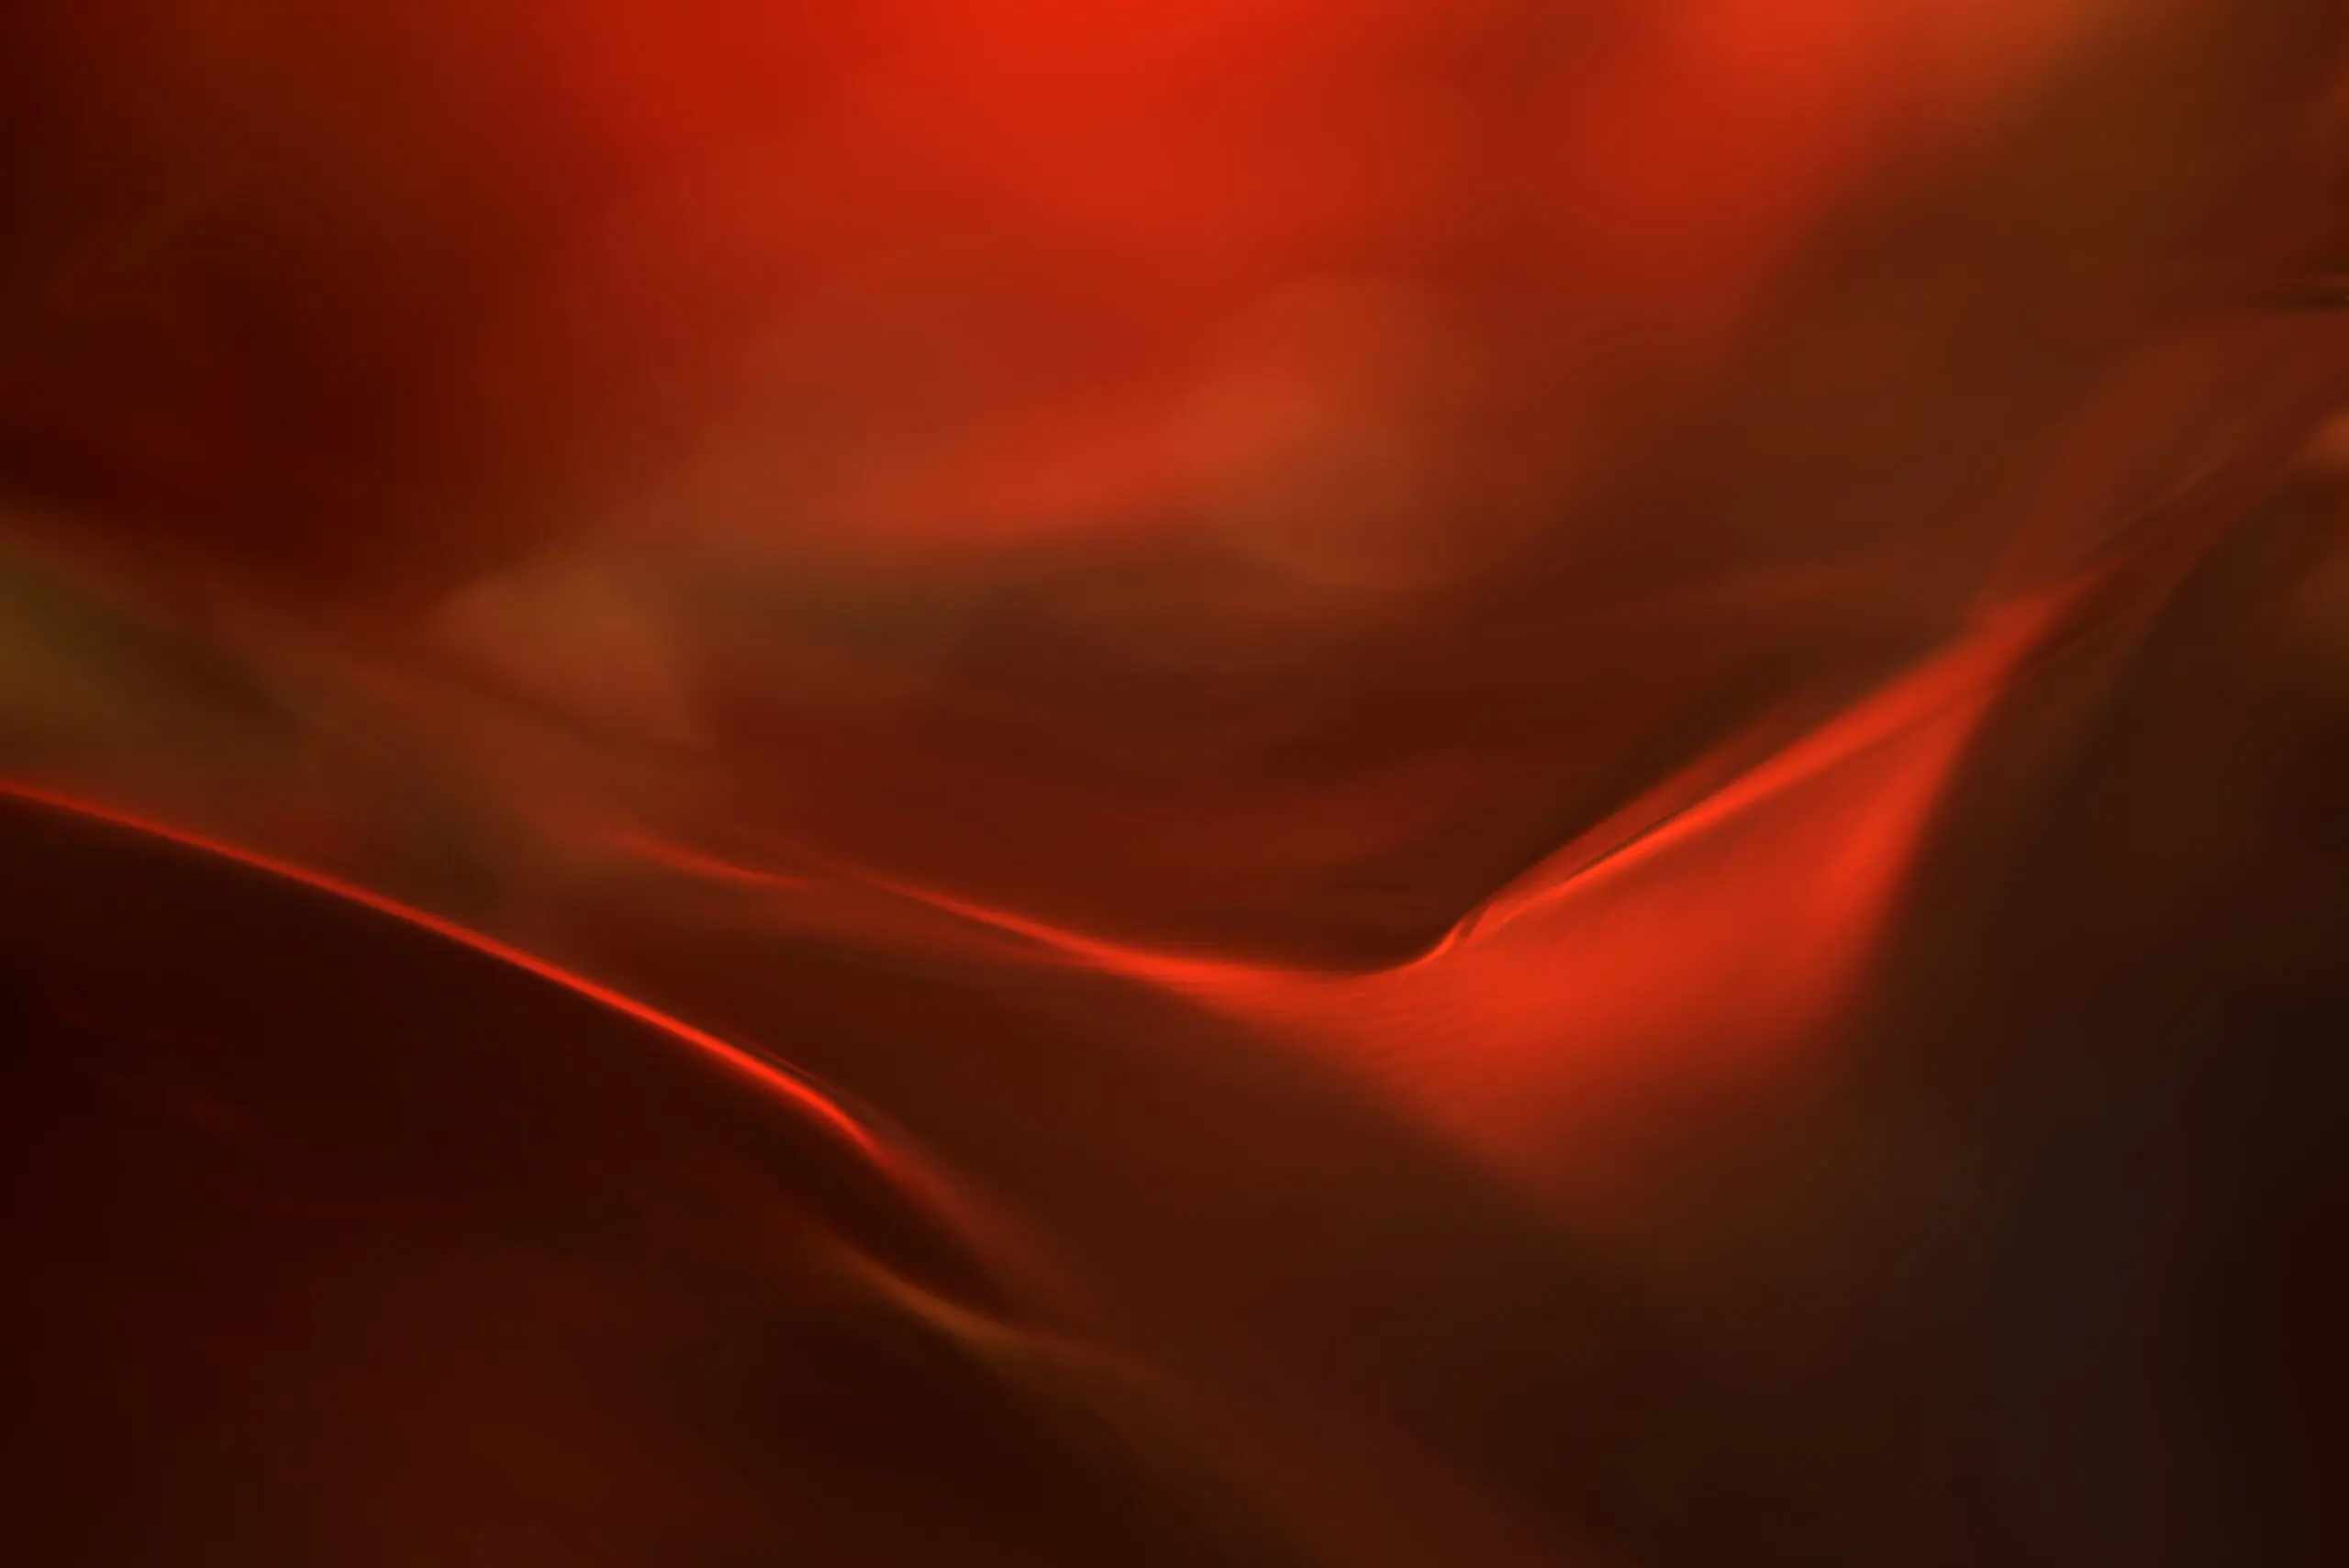 Wandbild (6091) The red valley by Heidi Westum, 1x.com präsentiert: Kreatives,Abstrakt